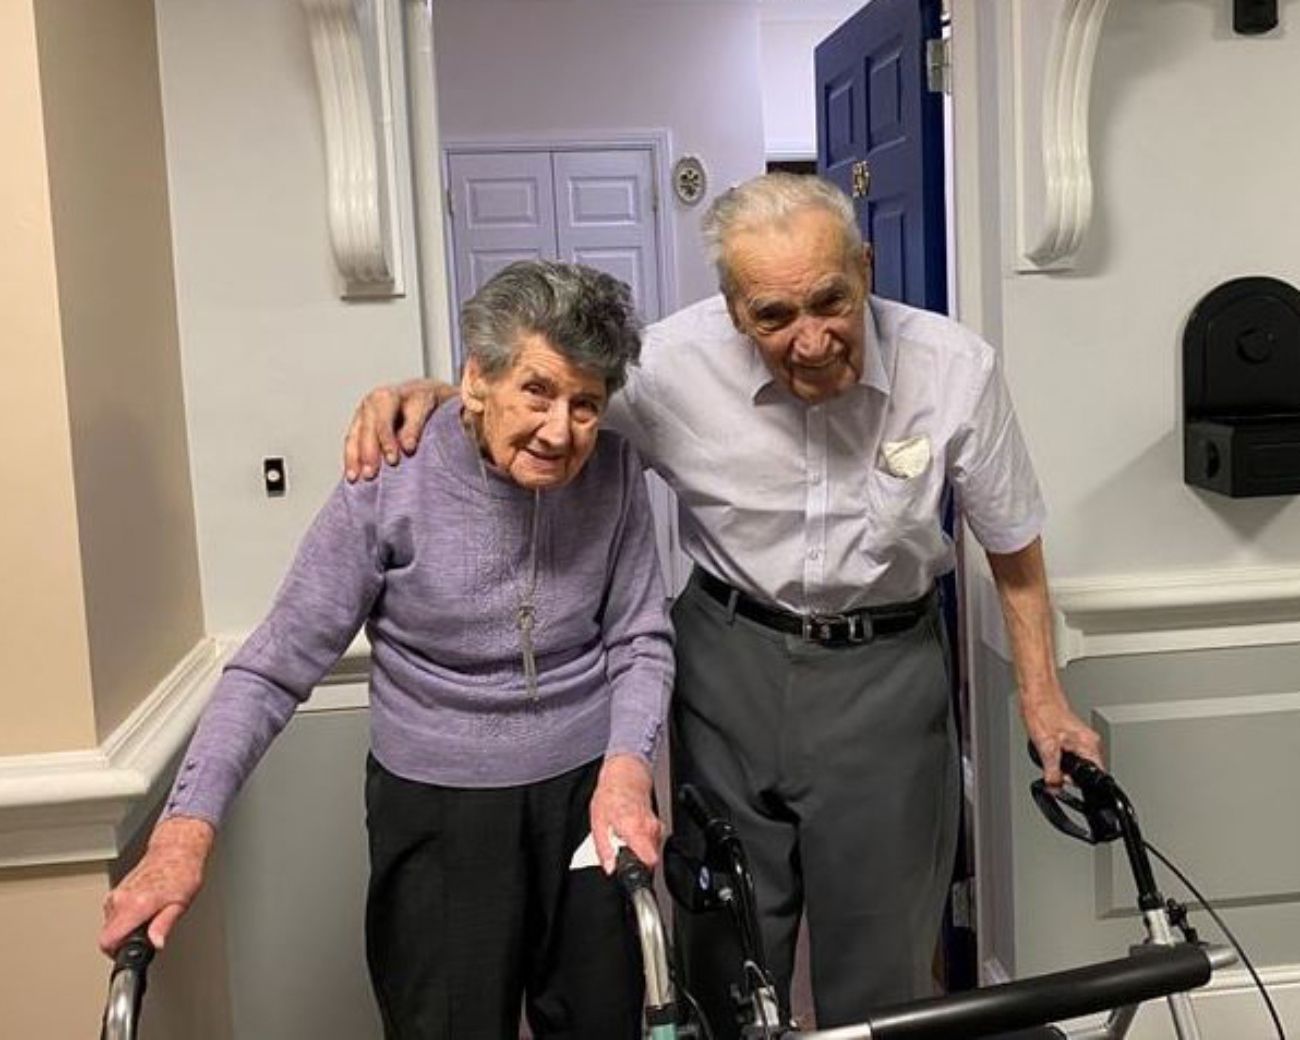 Ron y Joyce Bond, casados durante 81 años, dan la clave de su largo matrimonio: "Dar y recibir"